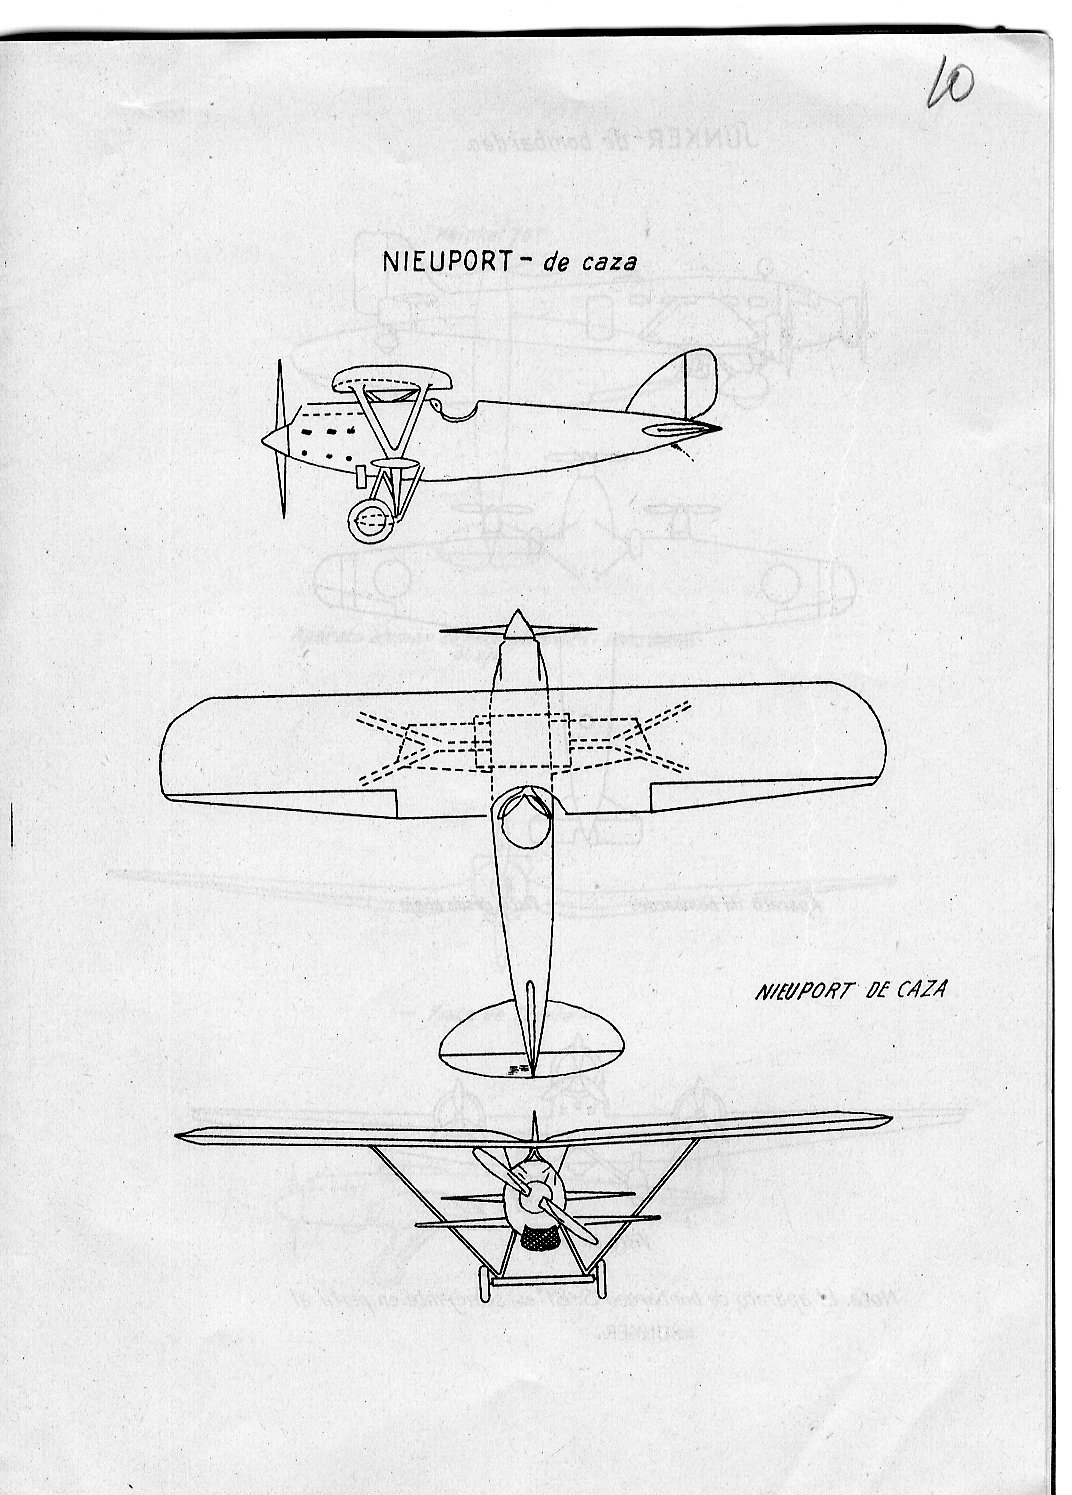 Nieuport N-52